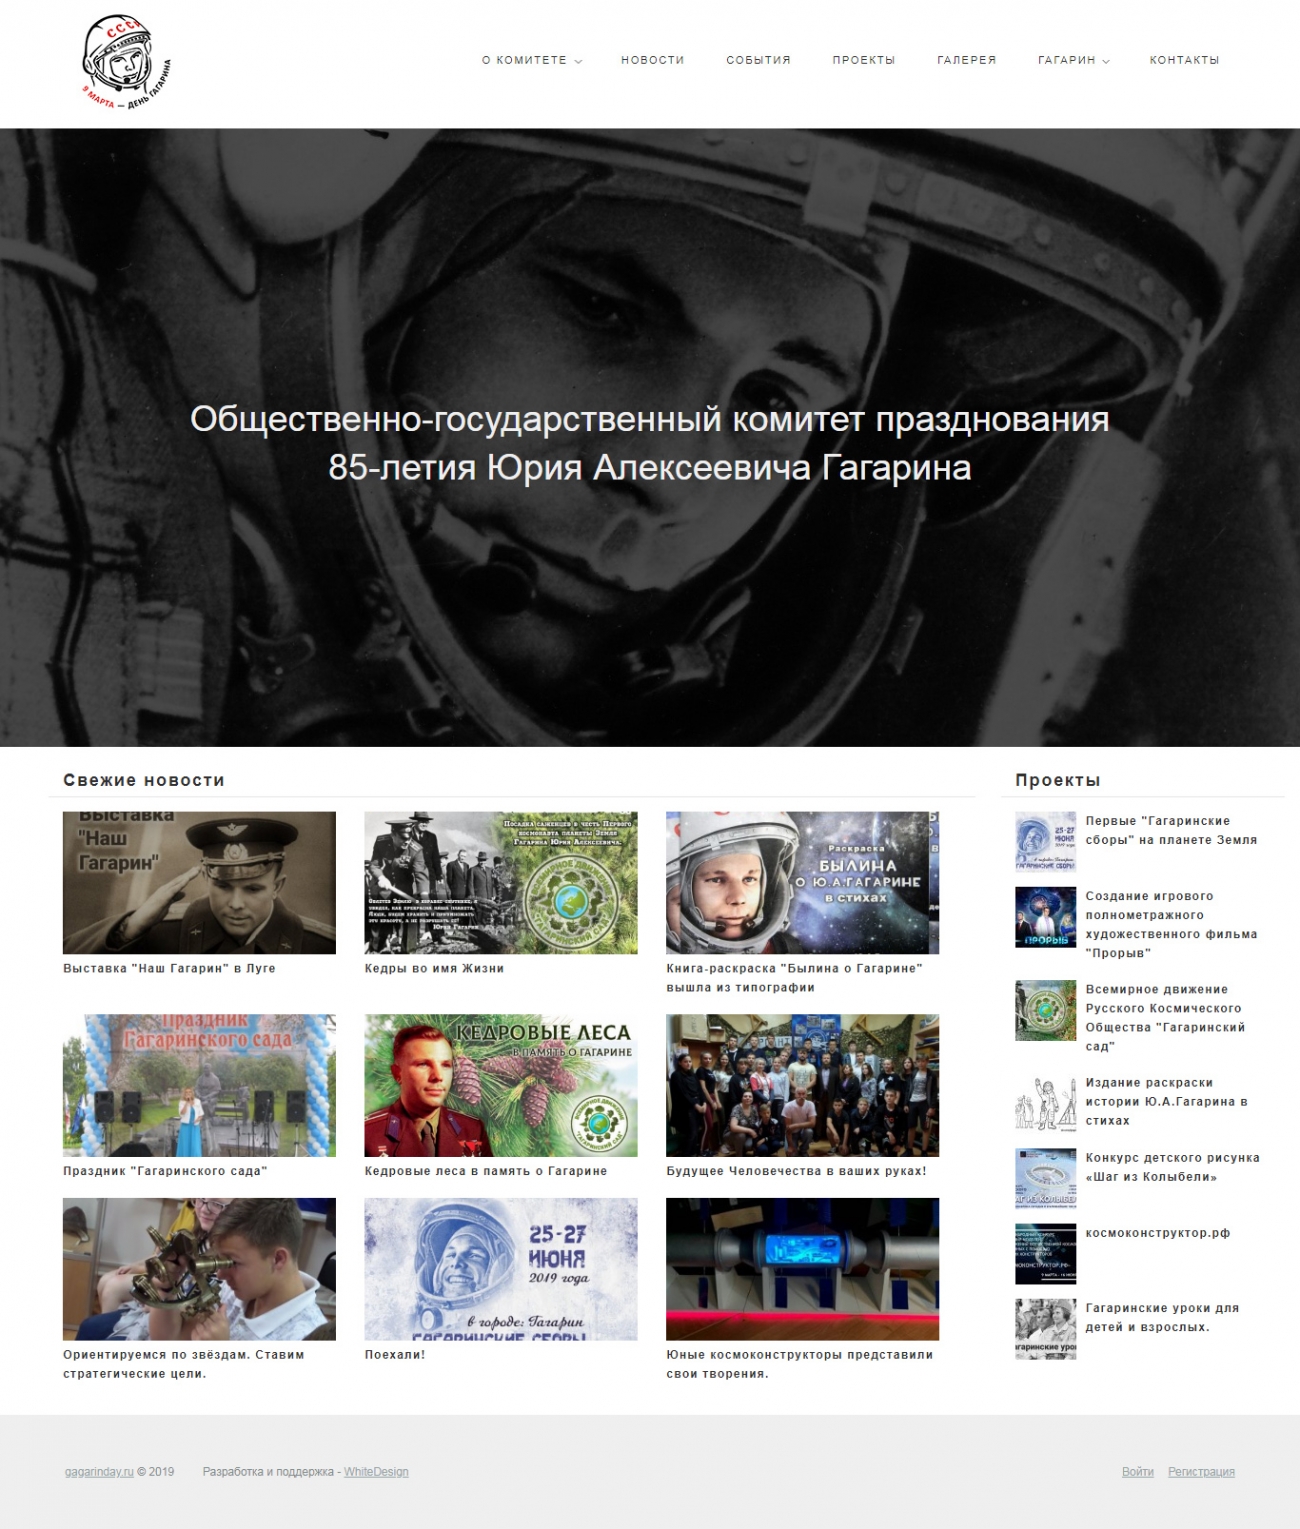 Главная страница сайта празднования 85-летия Юрия Алексеевича Гагарина